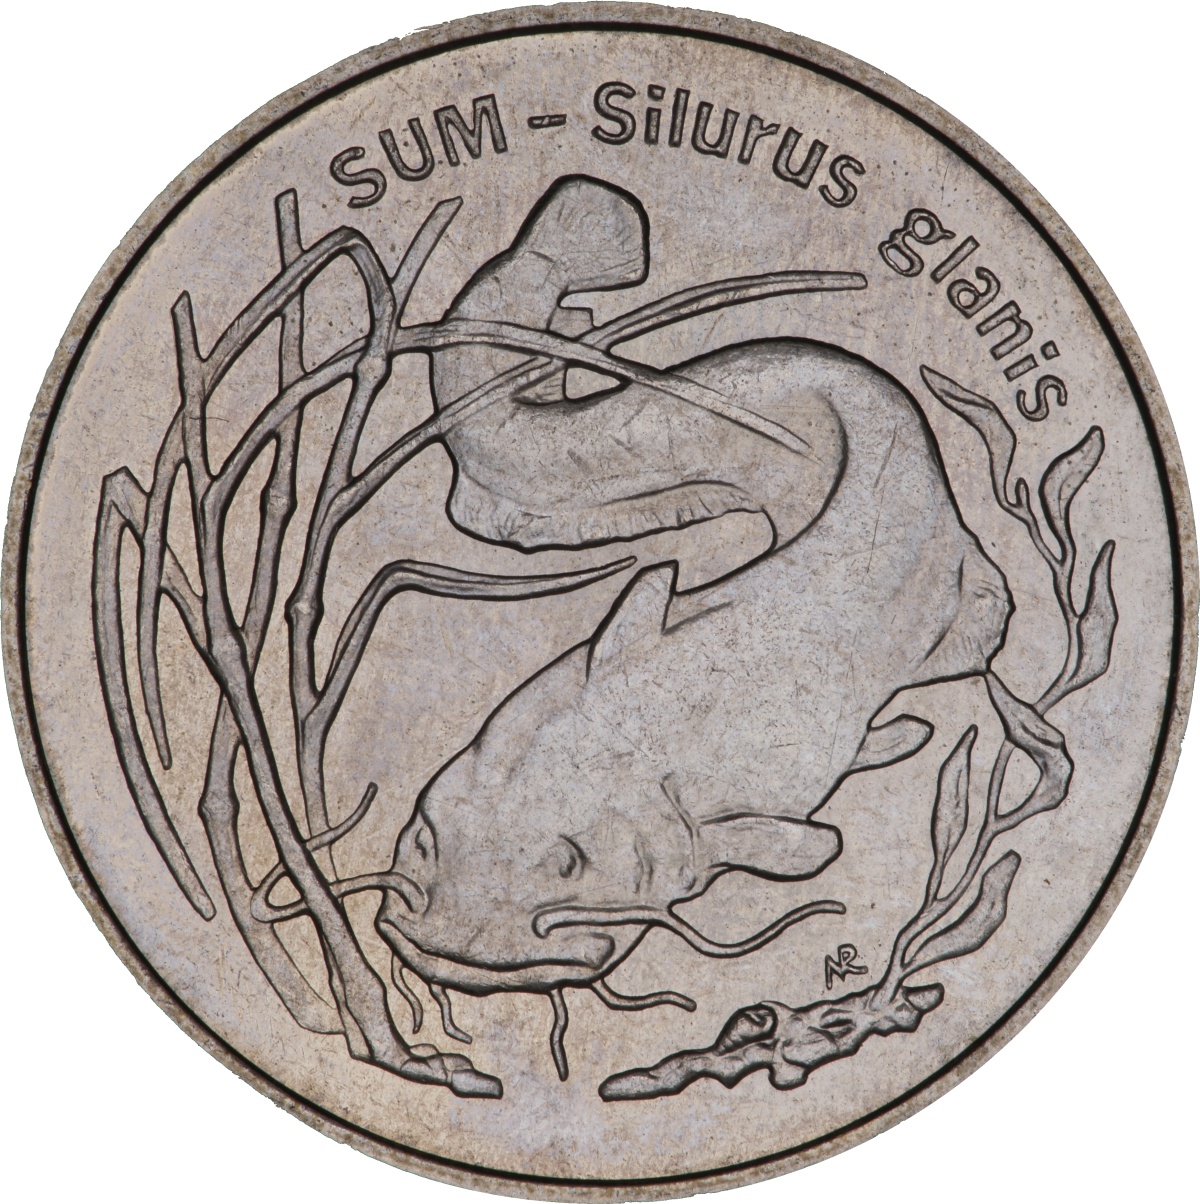 2zl-sum-silurus-glans-rewers-monety